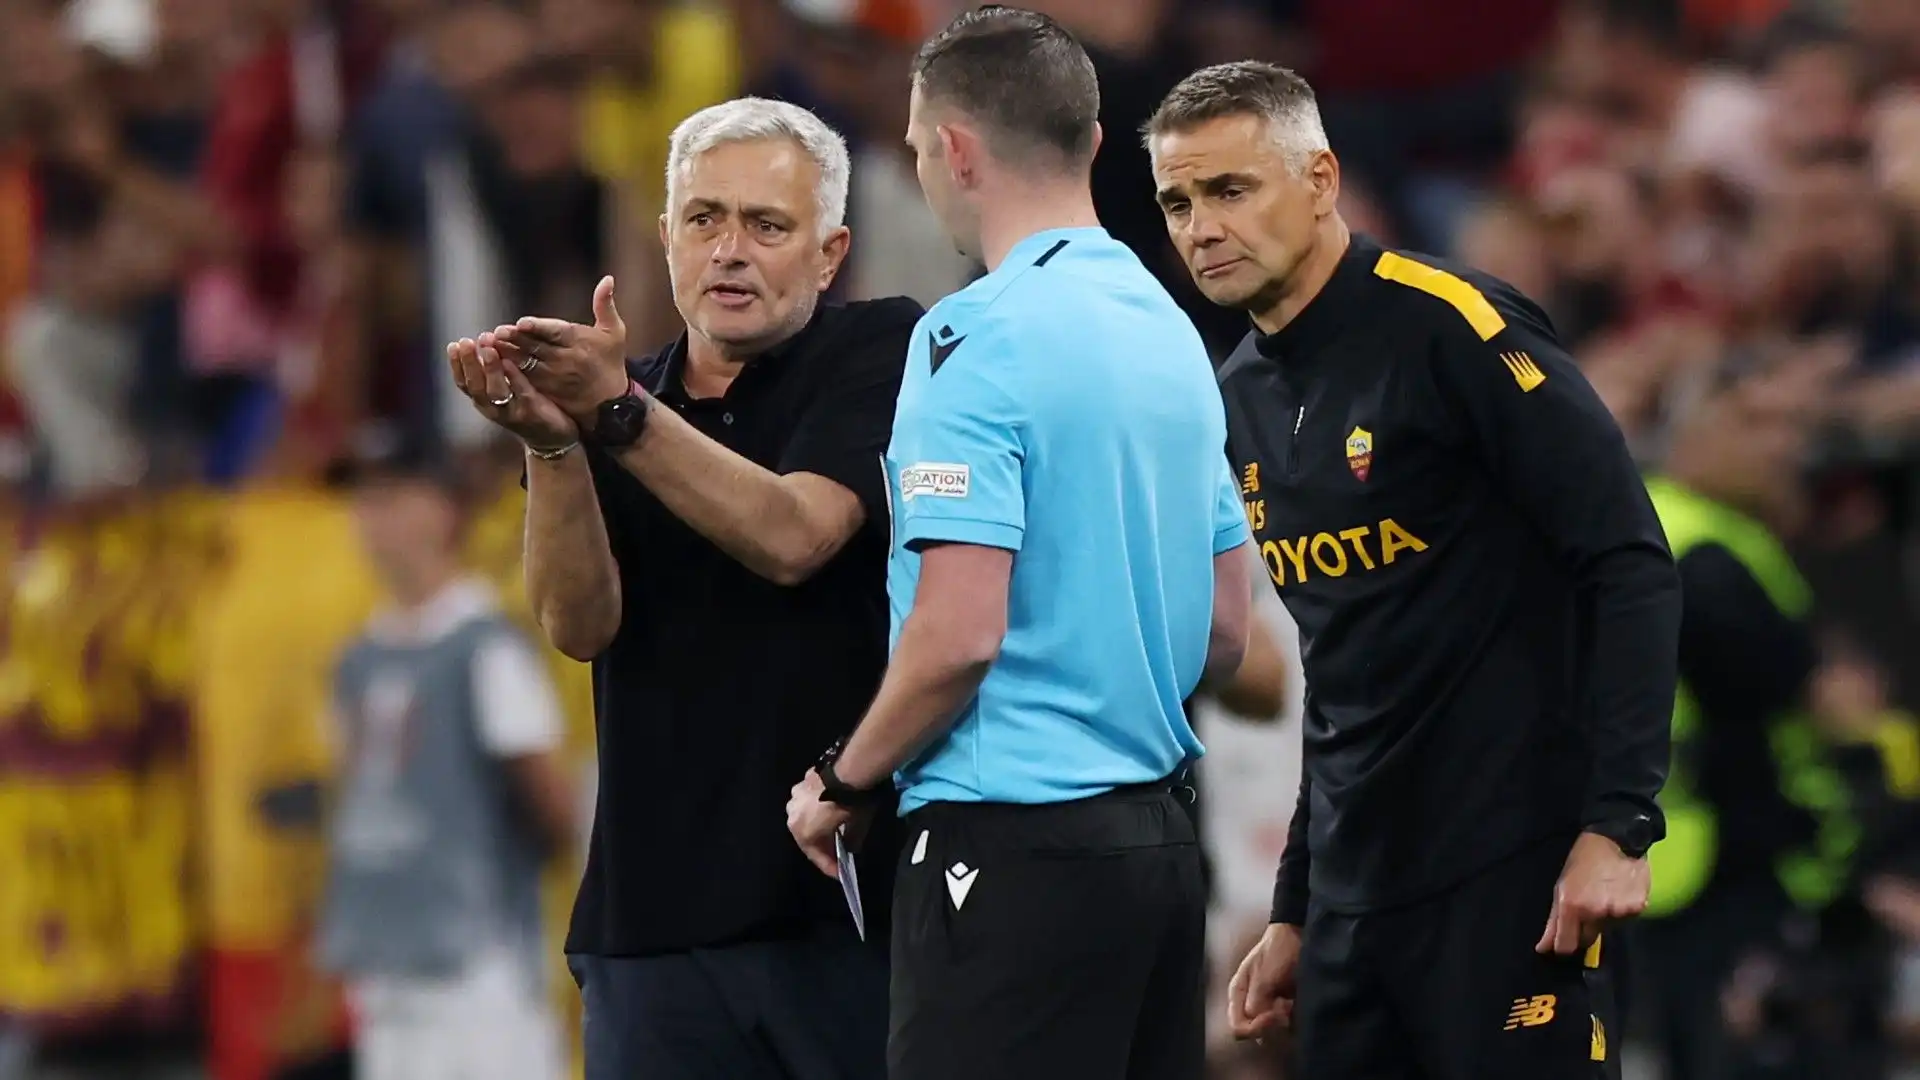 Di nuovo José Mourinho a colloquio con l'arbitro durante la partita